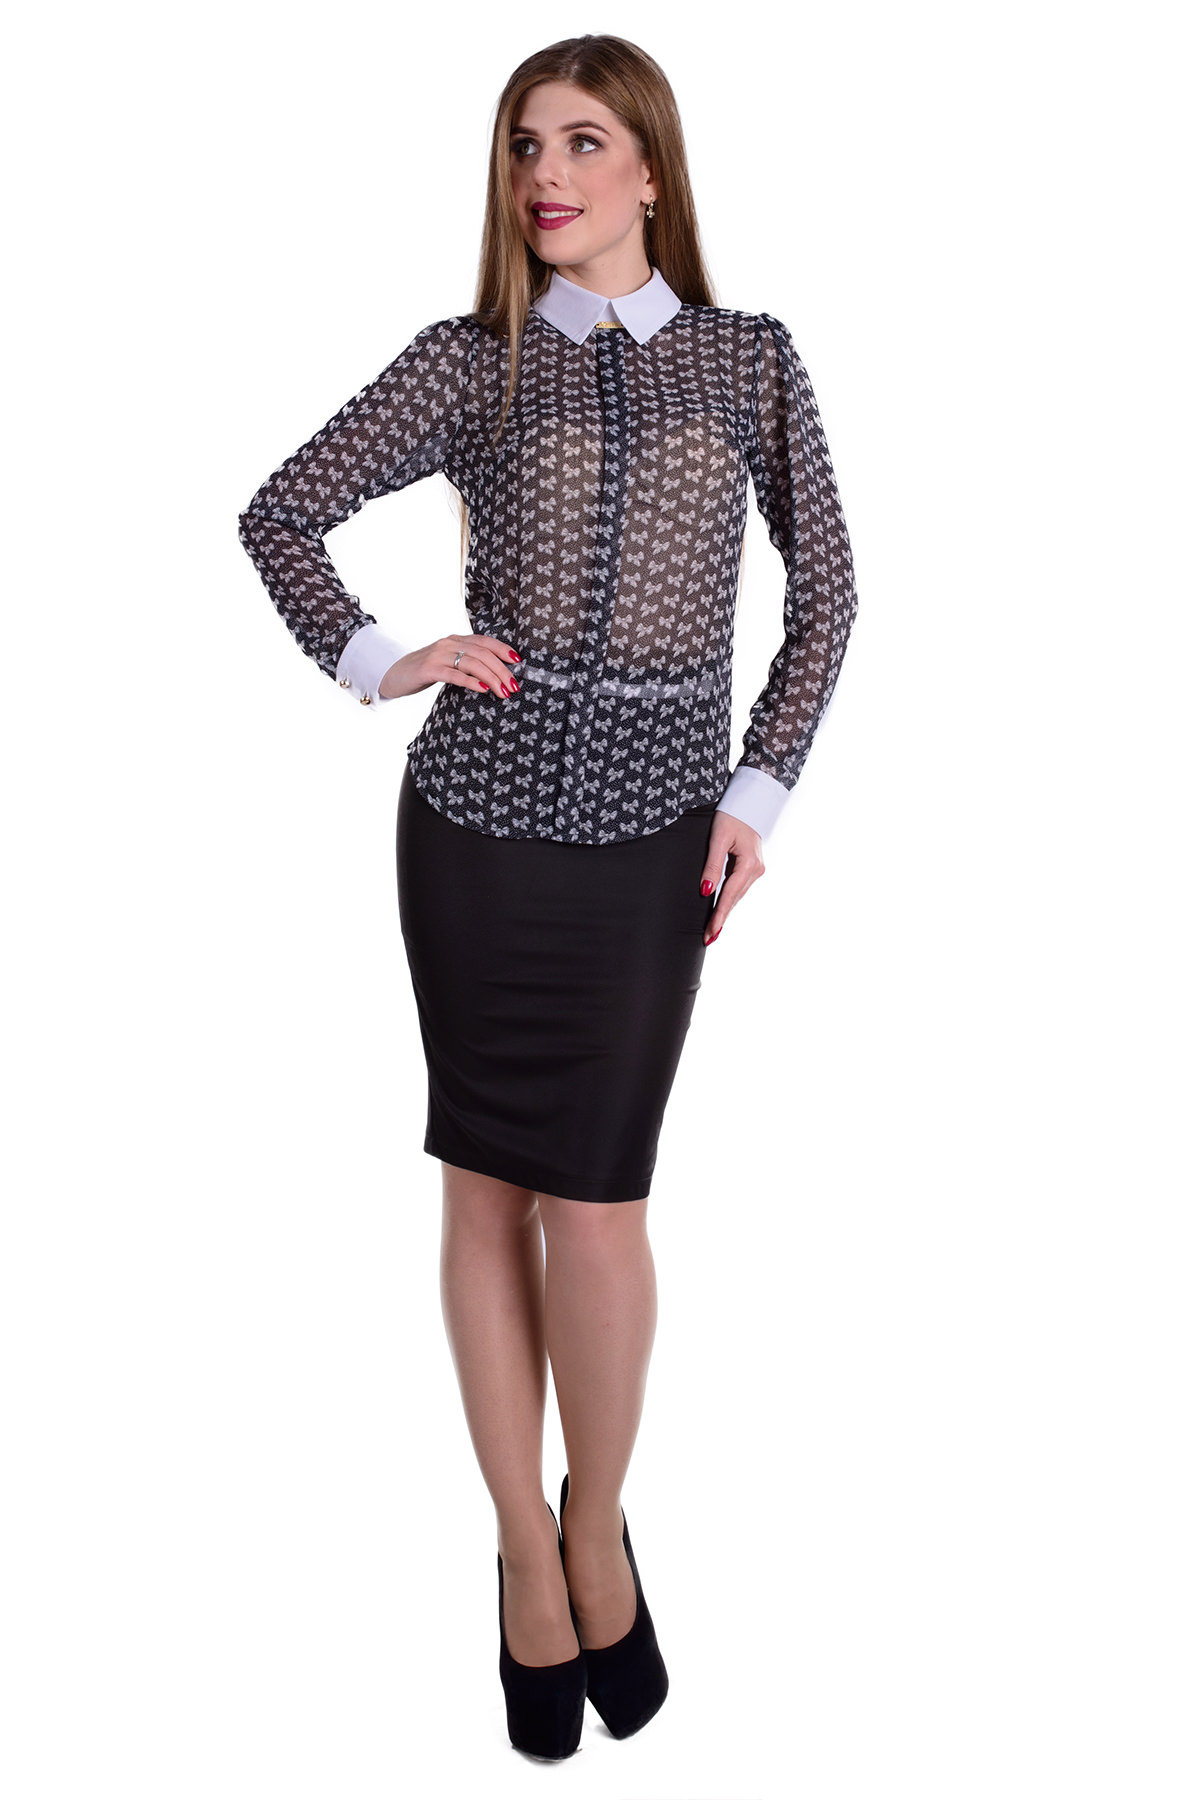 Женская одежда оптом от производителя Modus Блуза Липс шифон микра принт